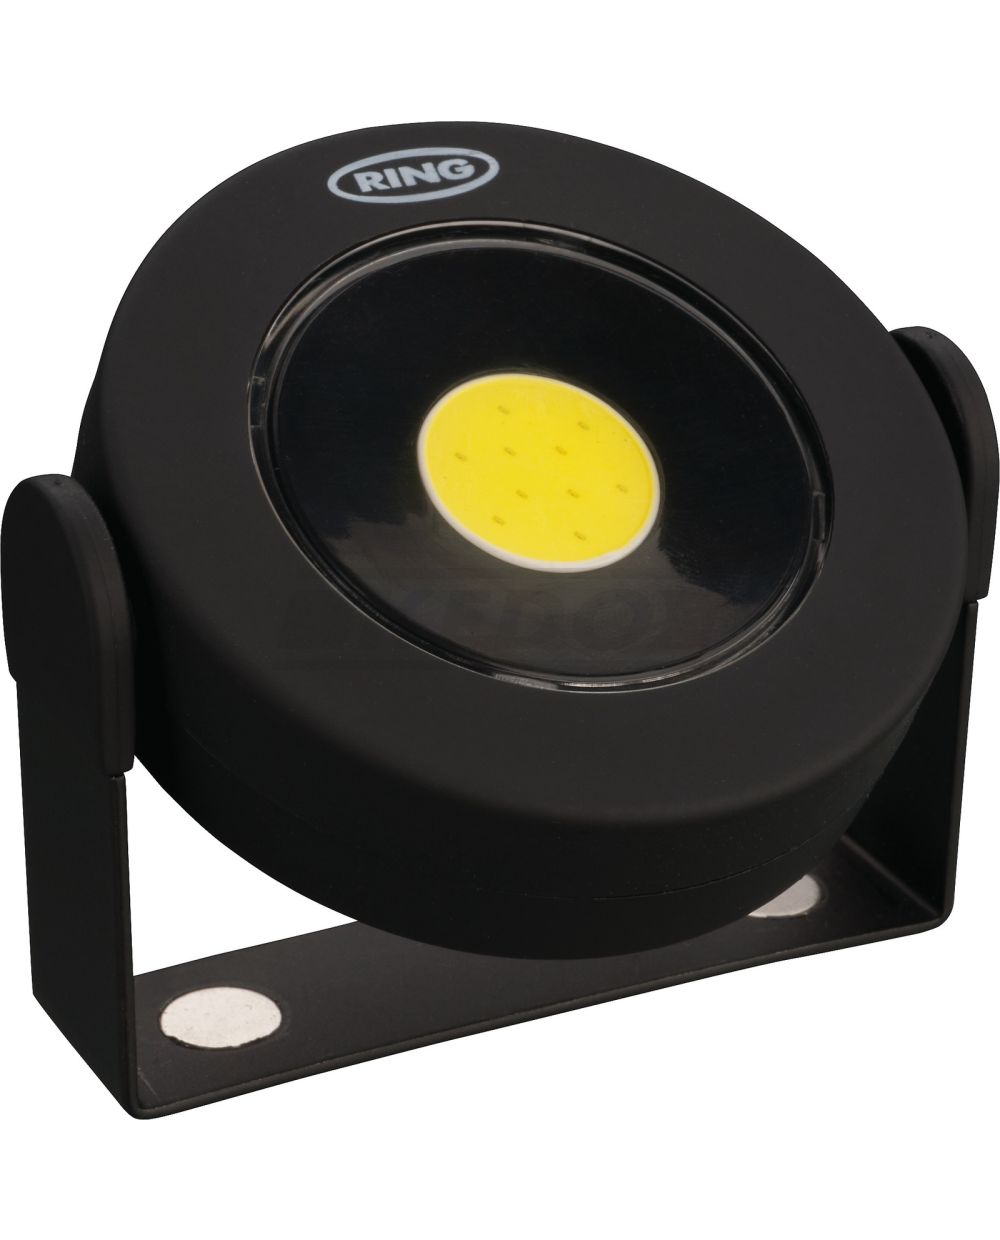 Lampe LED d'atelier 3W, 2 puissances: 50/160 Lumen, taille: env. 75x80x20mm  (livré avec 4 piles, support magnétique, tourne à 360°, pied caoutchouté)